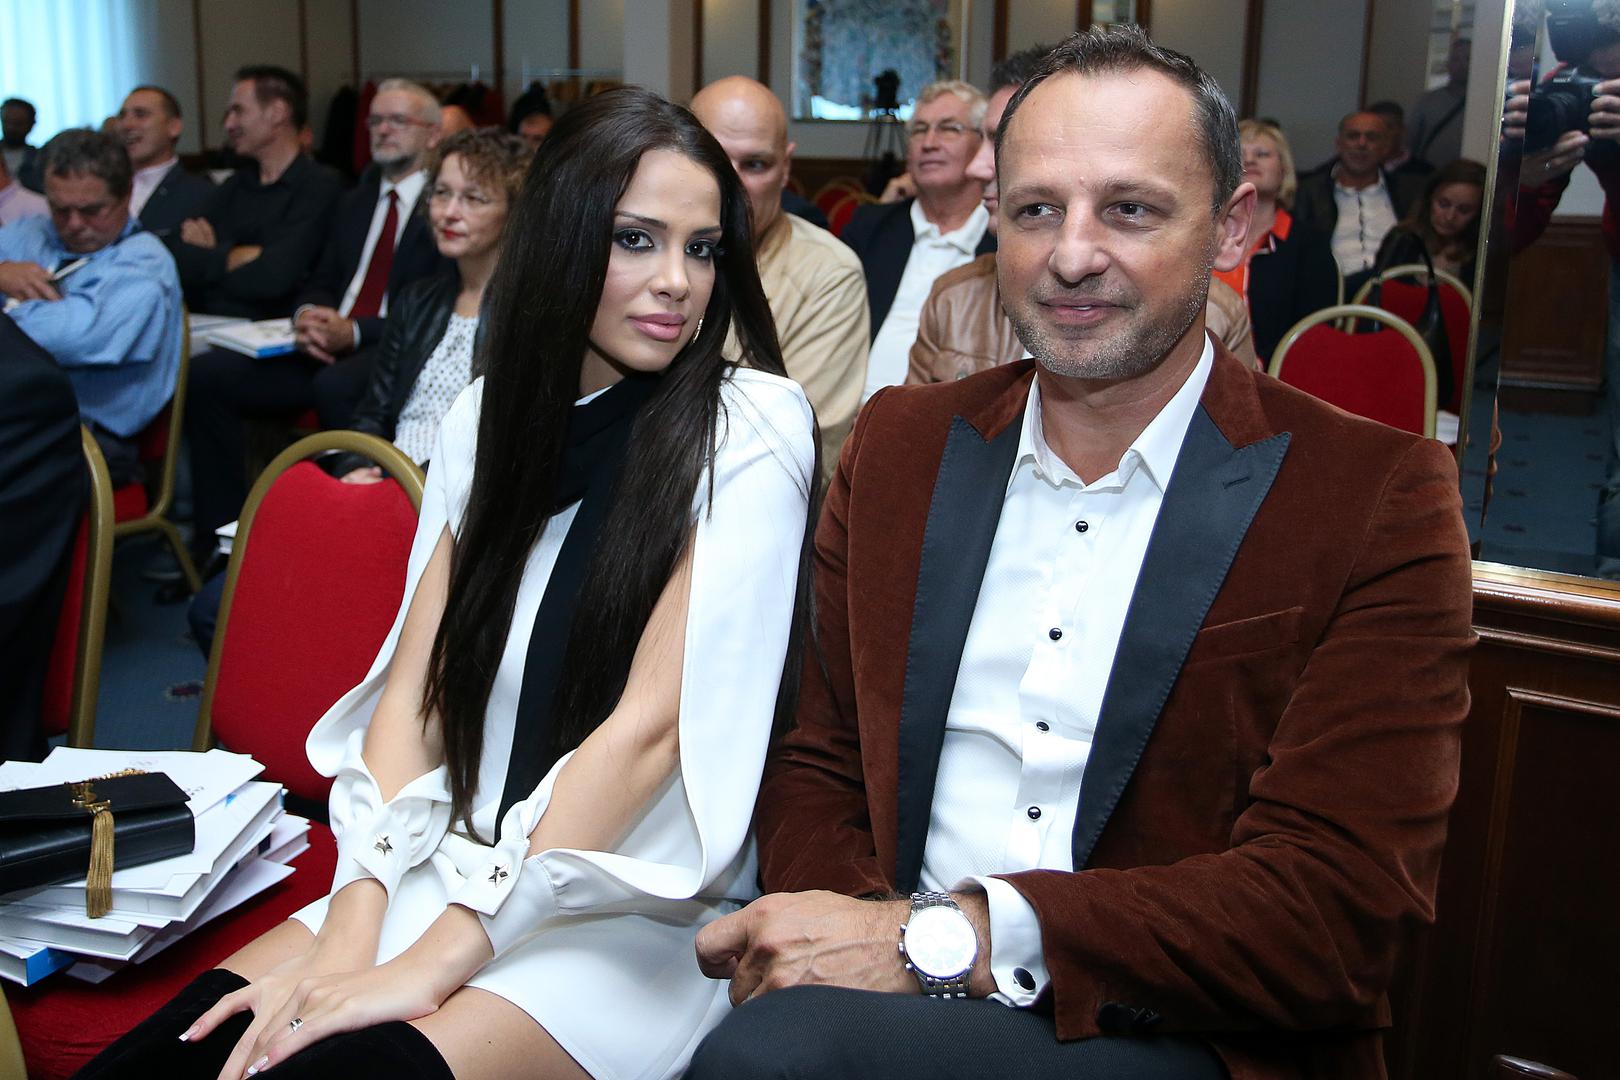 U bračnu luku uplovili su i Dragan Jurilj i 23 godine mlađi model, Splićanka Mia Franić, a za mjesto radnje odabrali su egzotični Marakeš.